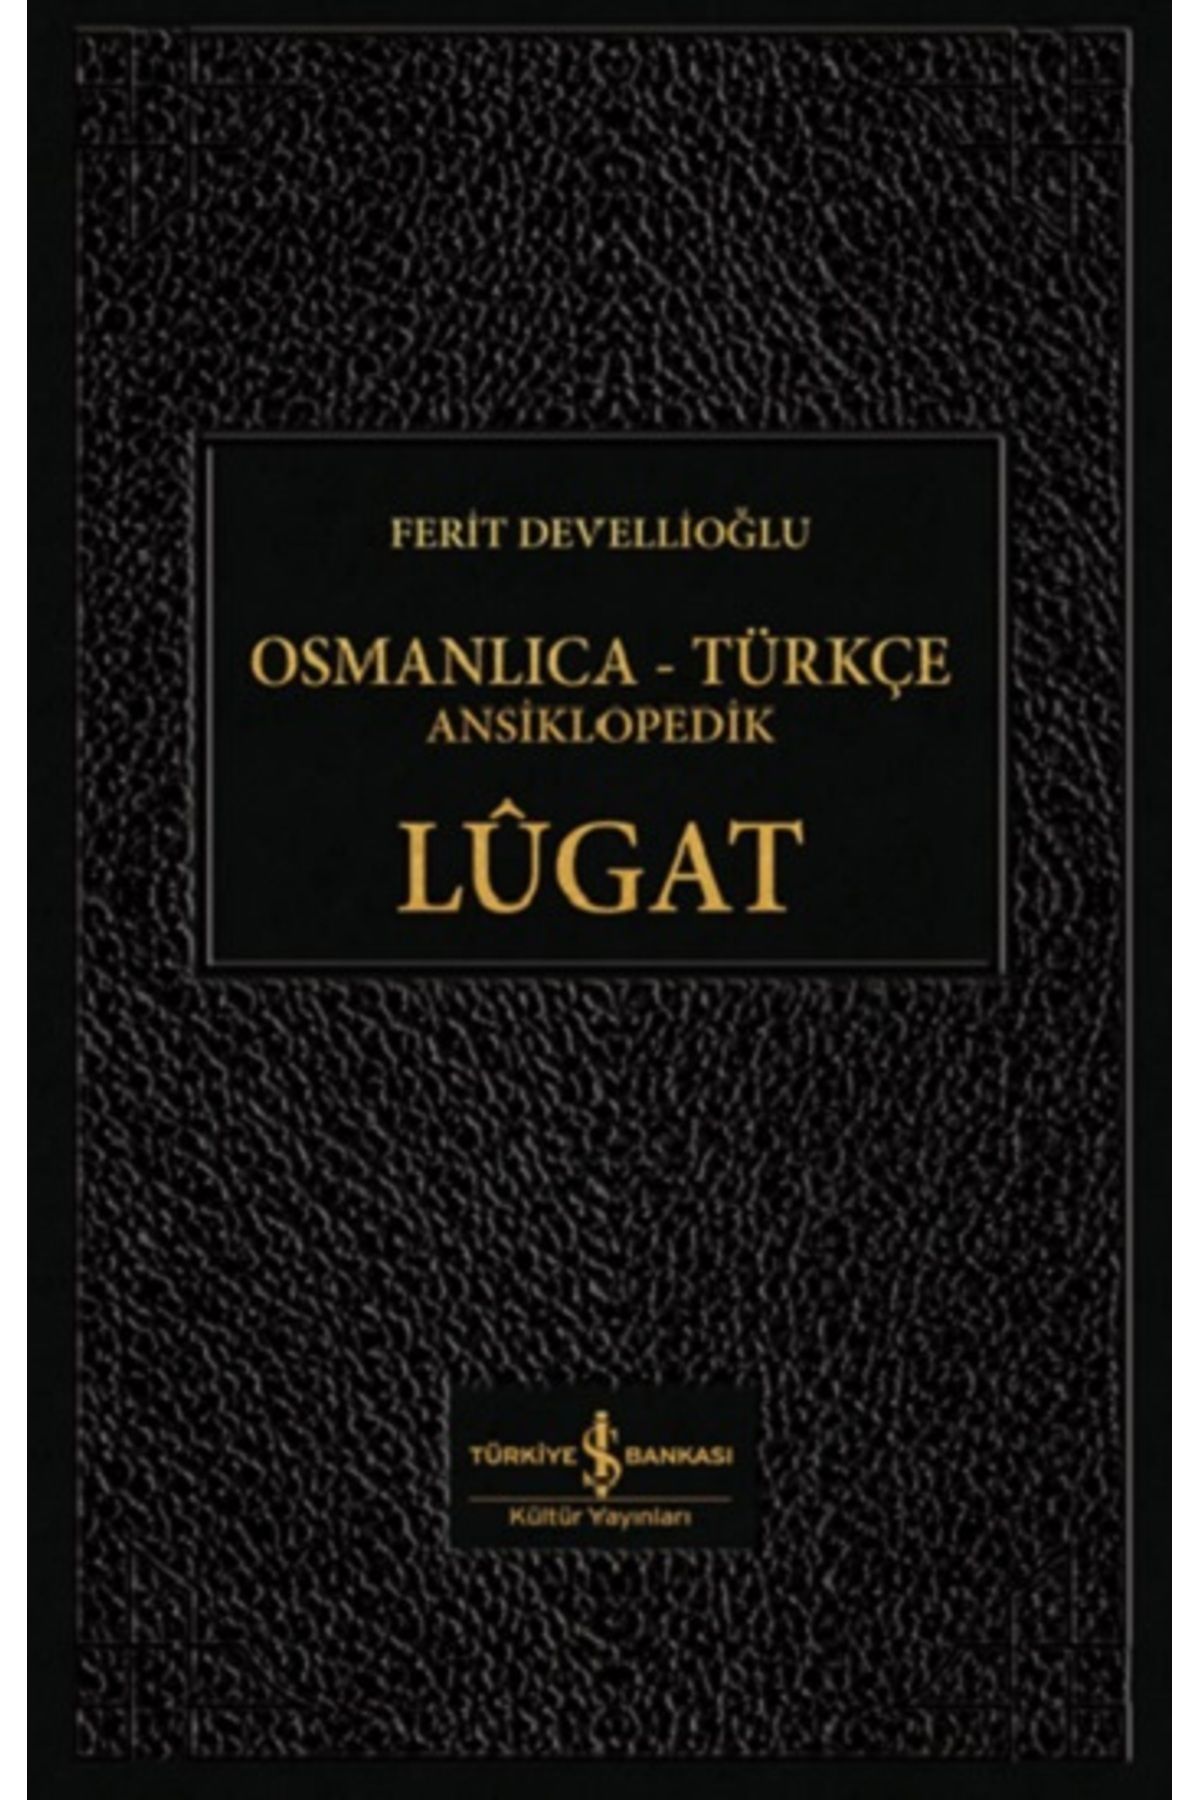 Türkiye İş Bankası Kültür Yayınları Osmanlıca - Türkçe Ansiklopedik Lügat (CİLTLİ)